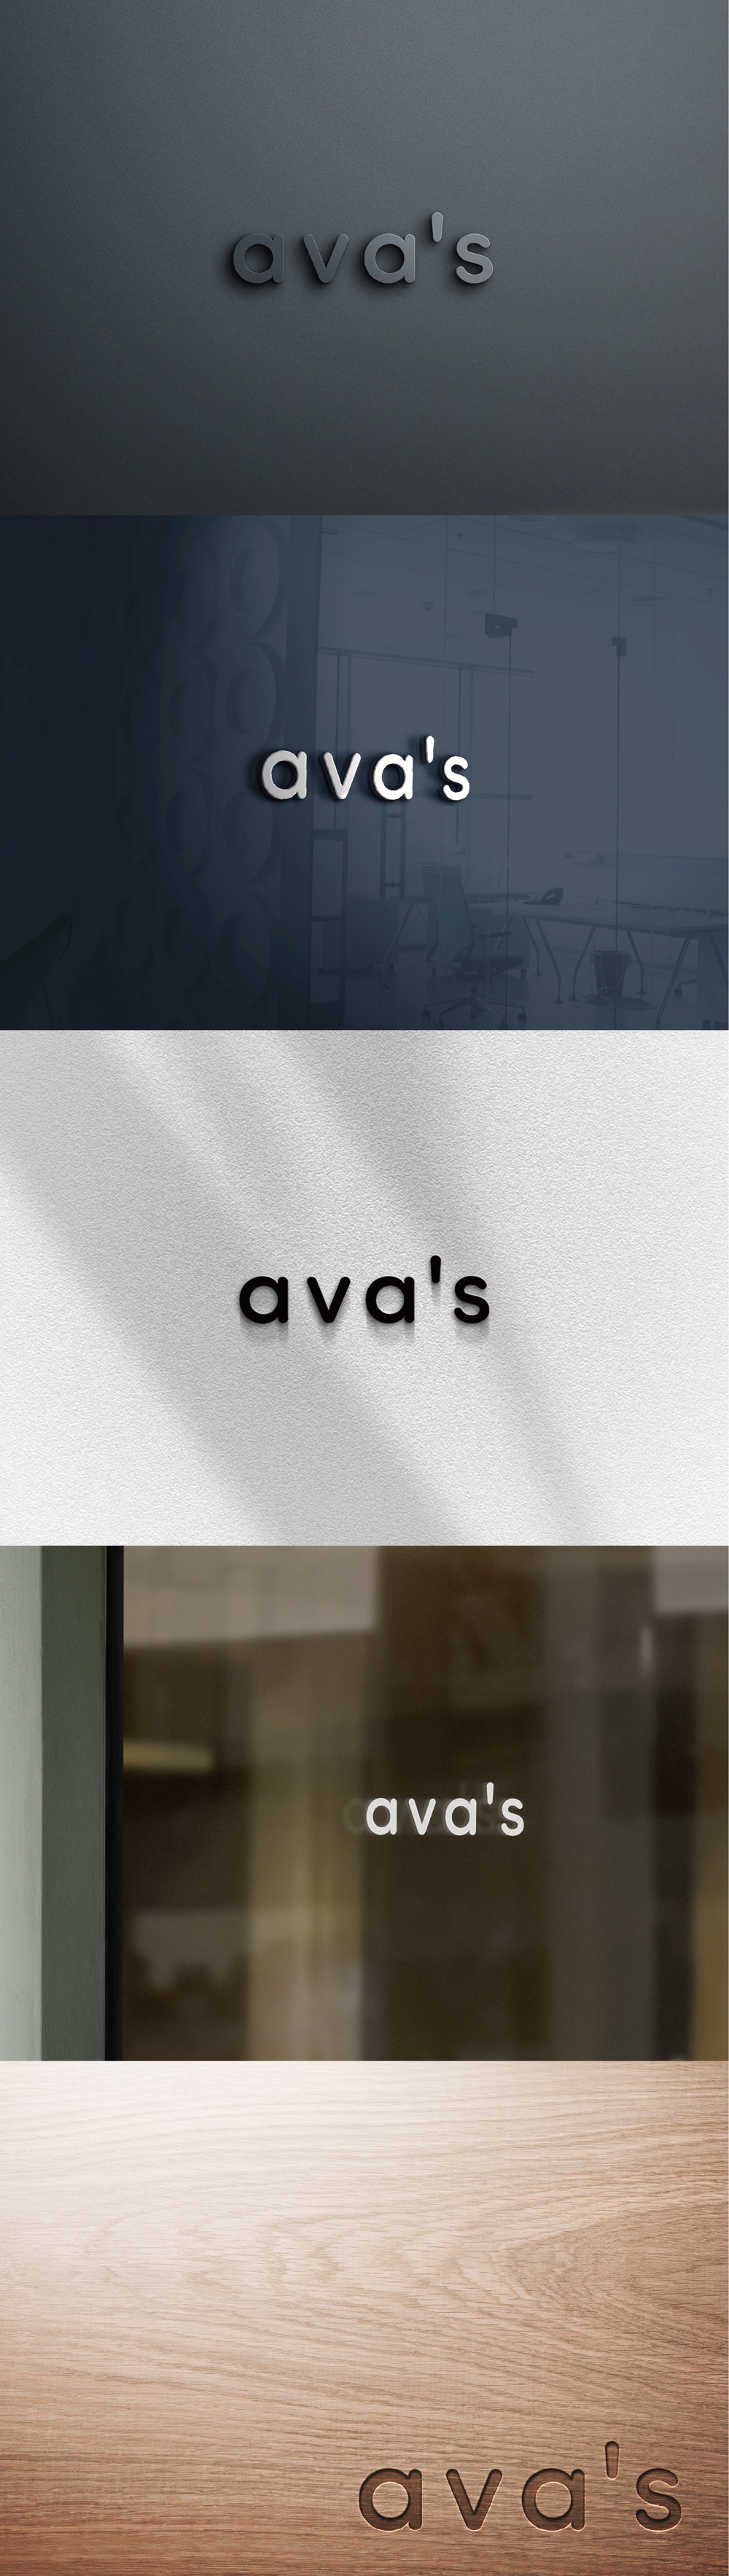 キッズアパレル「ava's」のロゴ作成依頼